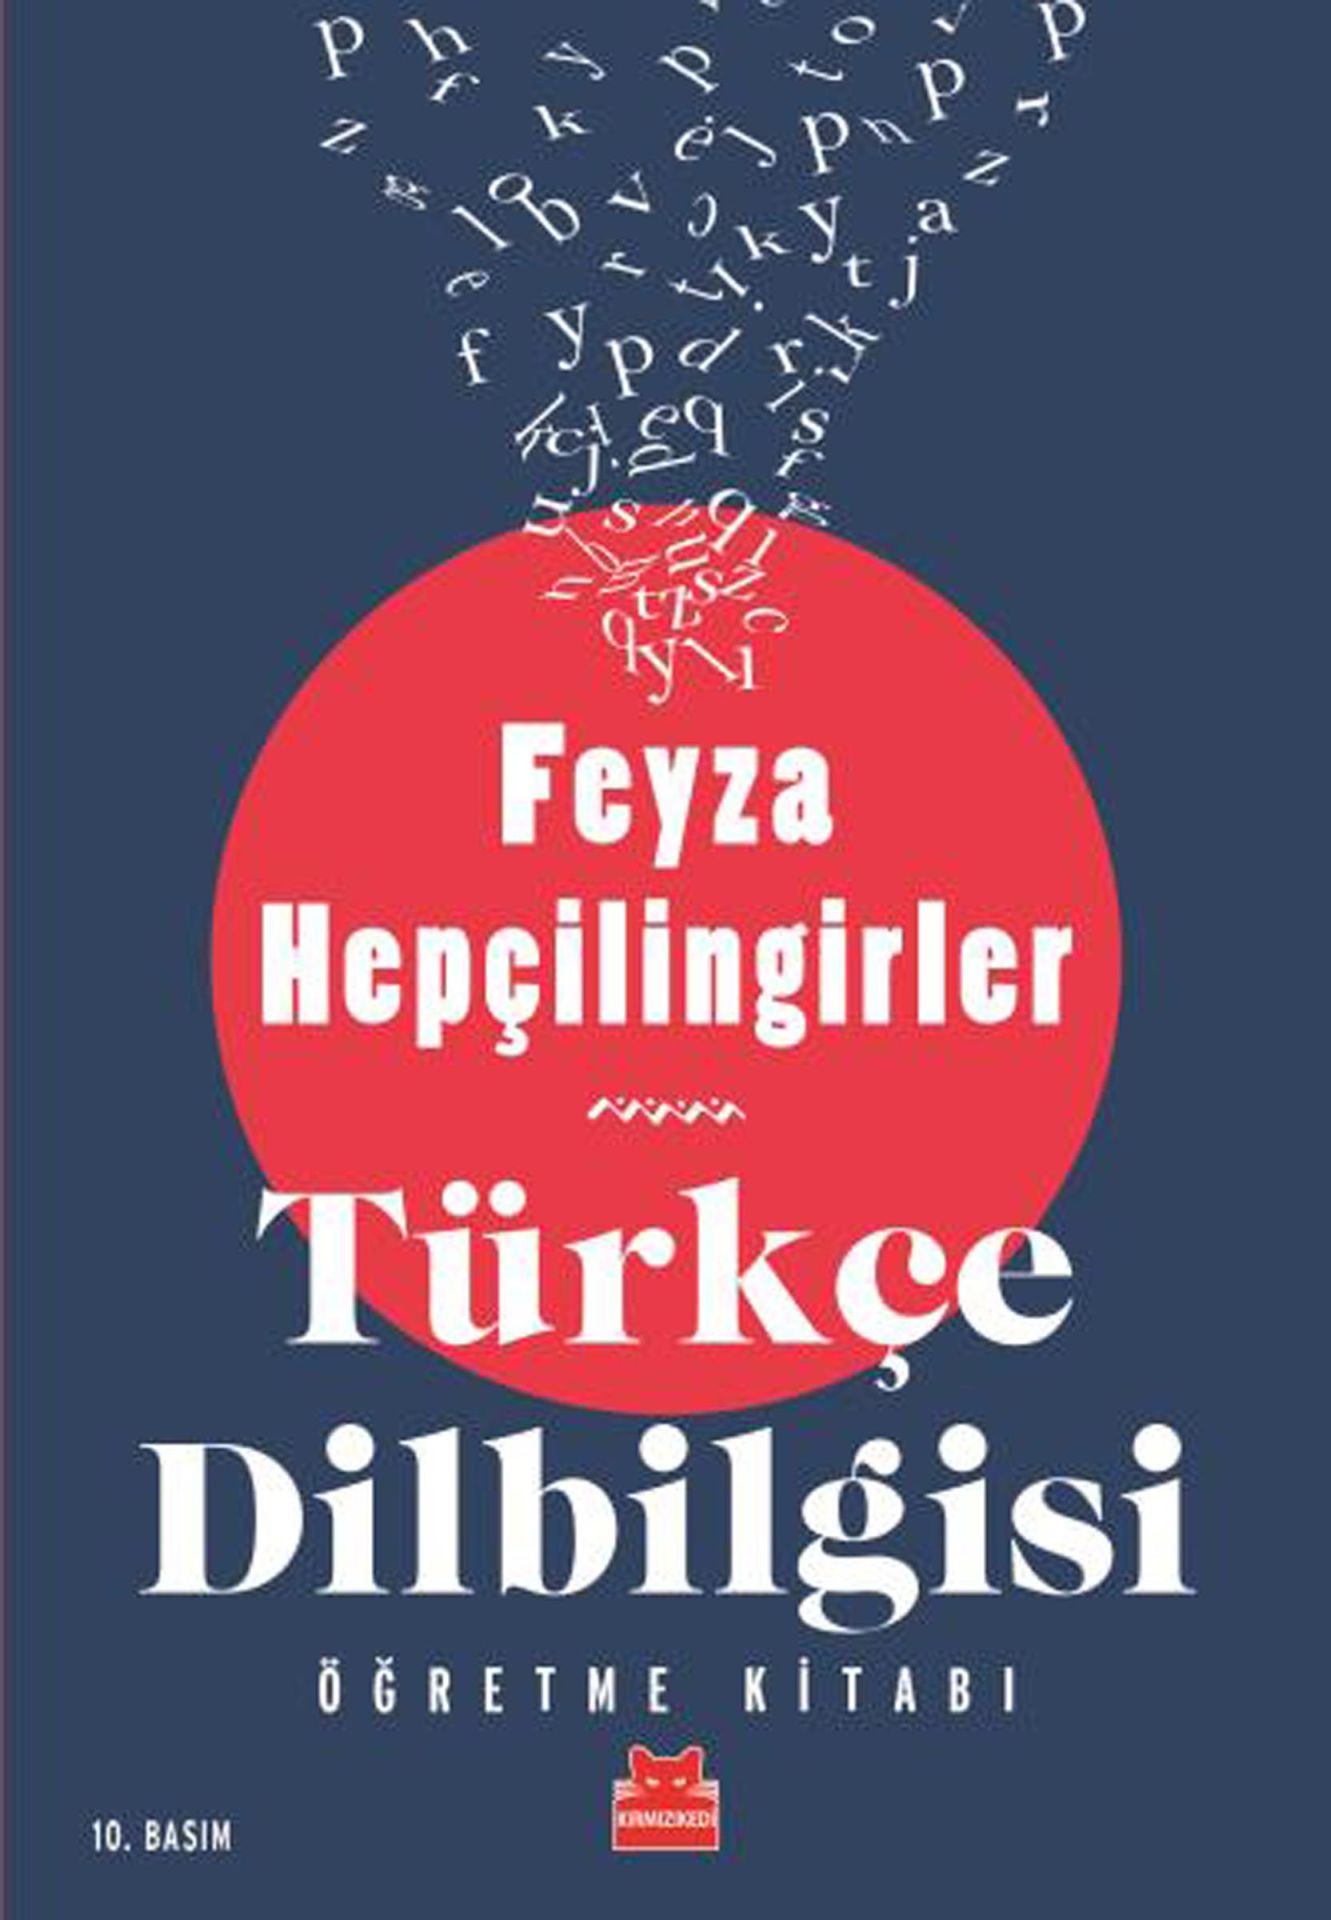 Türkçe Dilbilgisi Öğretme Kitabı